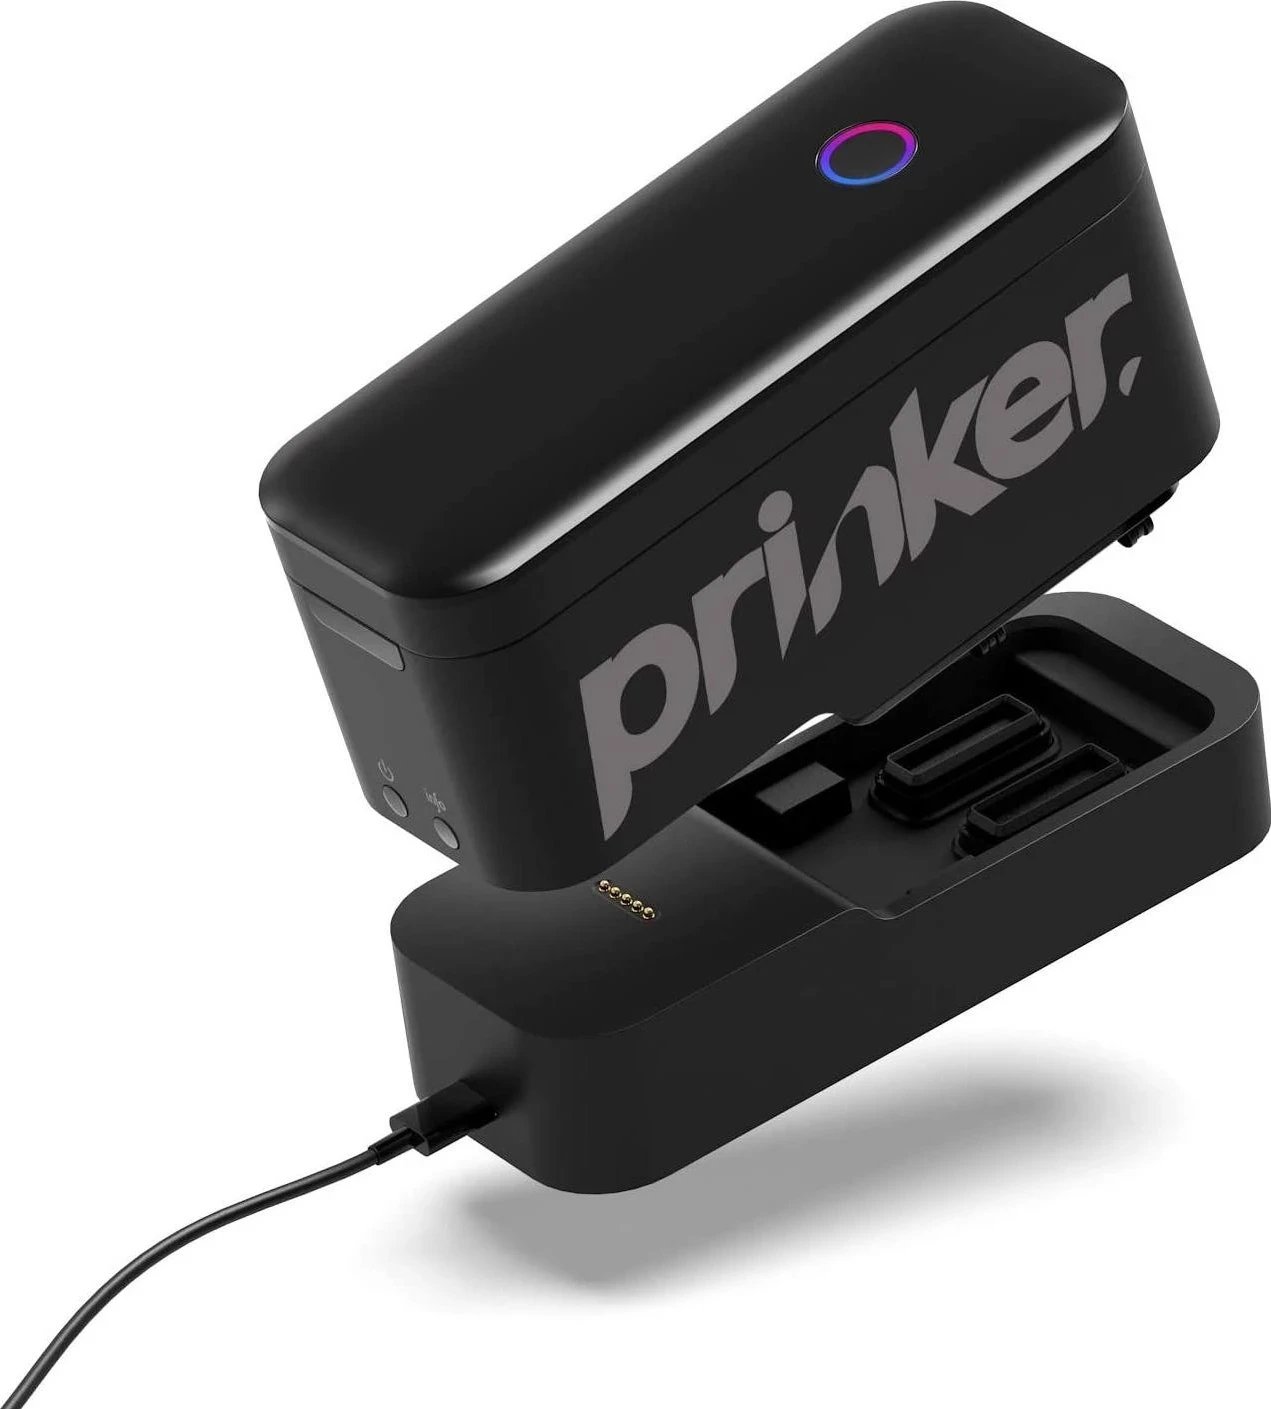 Printer Portativ për Tatuzhe Prinker S me Kartridzh Ngjyrë shtesë, ngjyrë e zezë